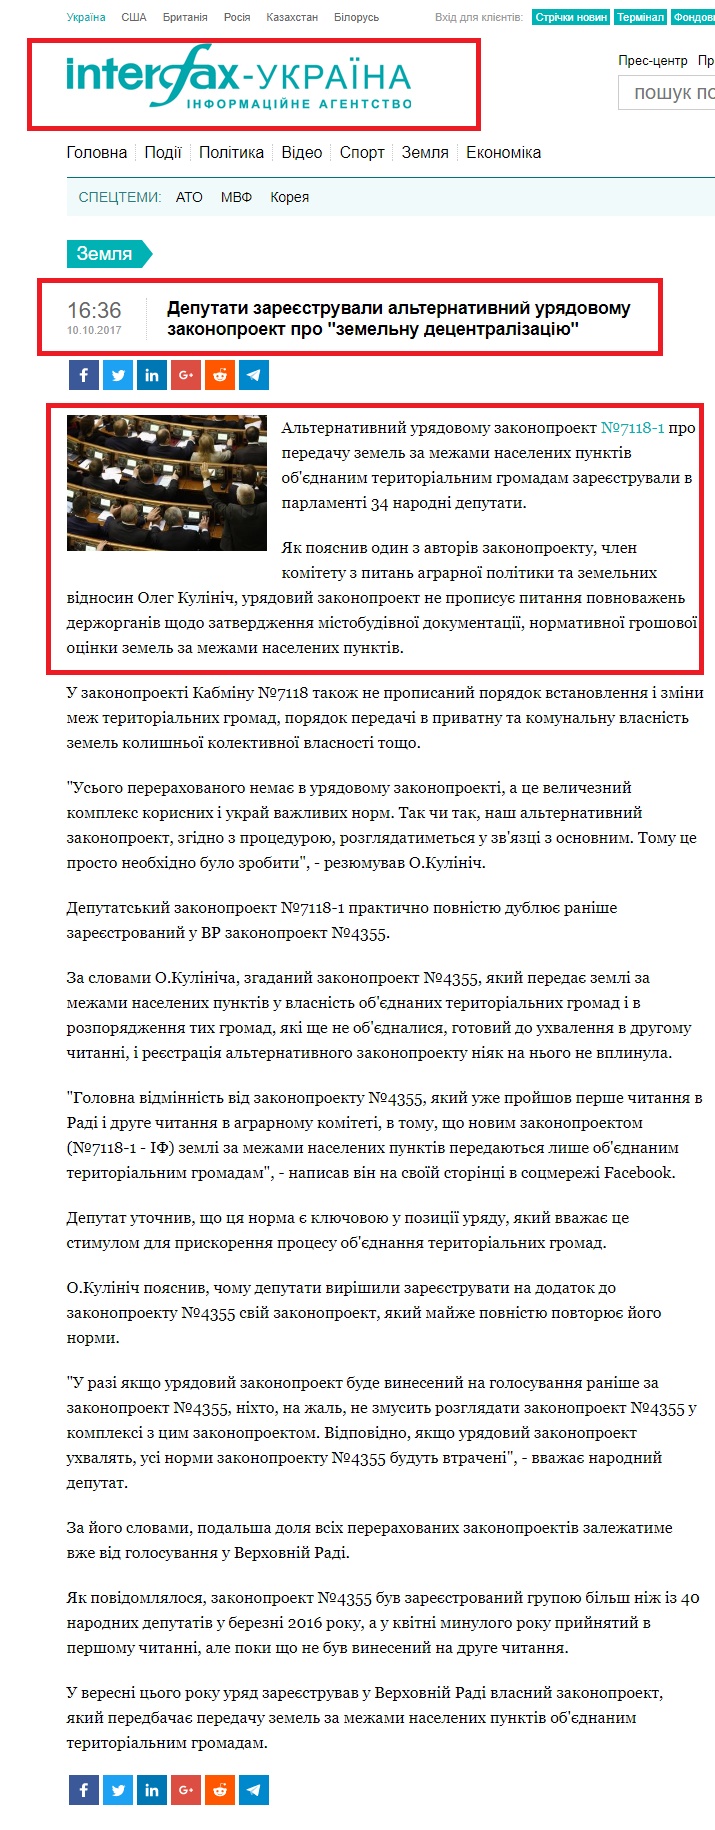 http://ua.interfax.com.ua/news/land/453958.html